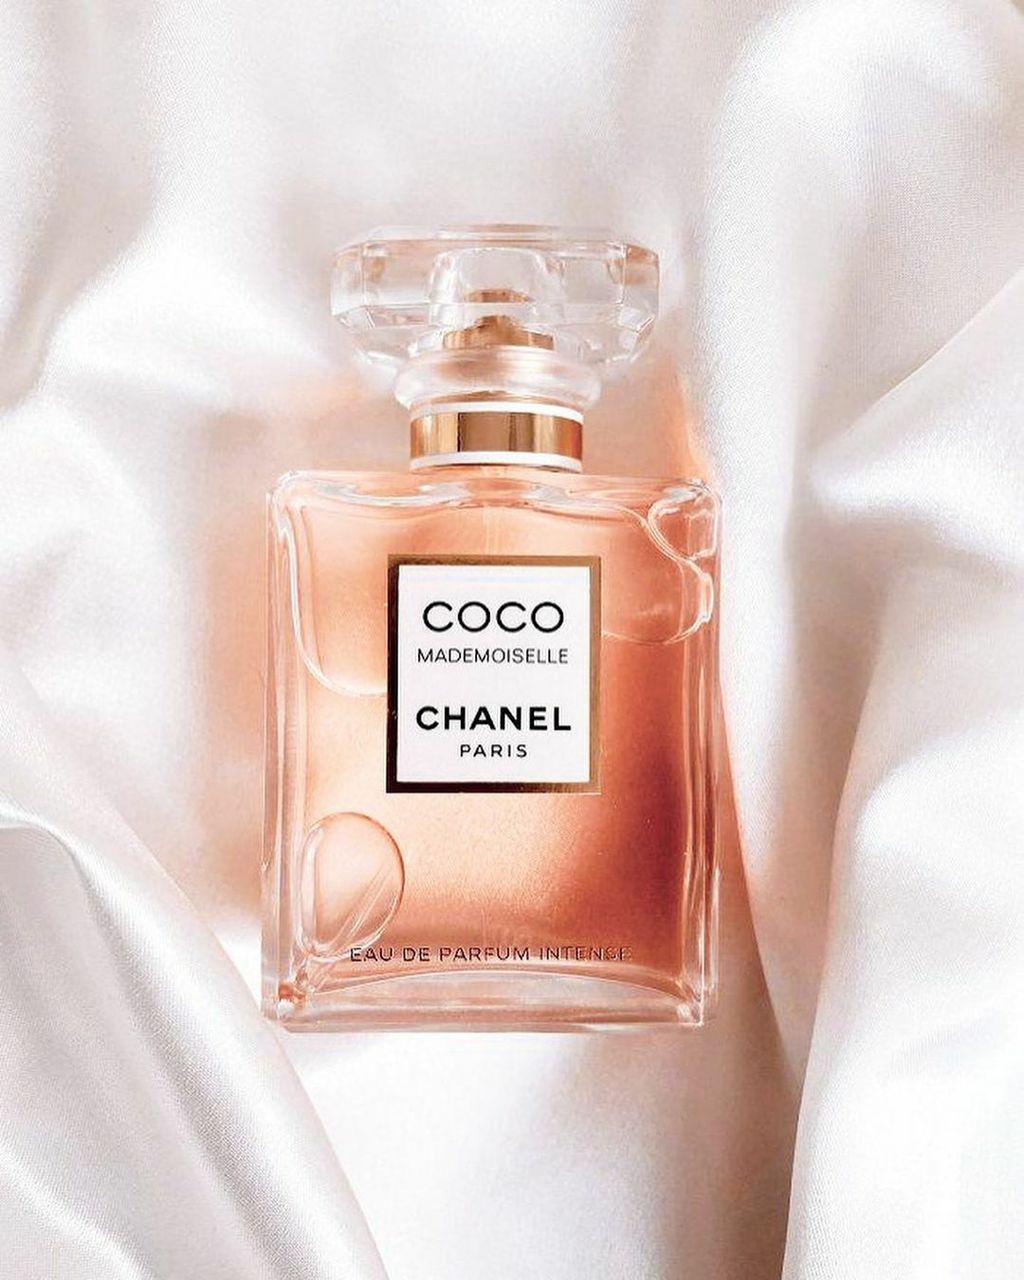 Chanel Coco Mademoiselle Intense - Eau de Parfum